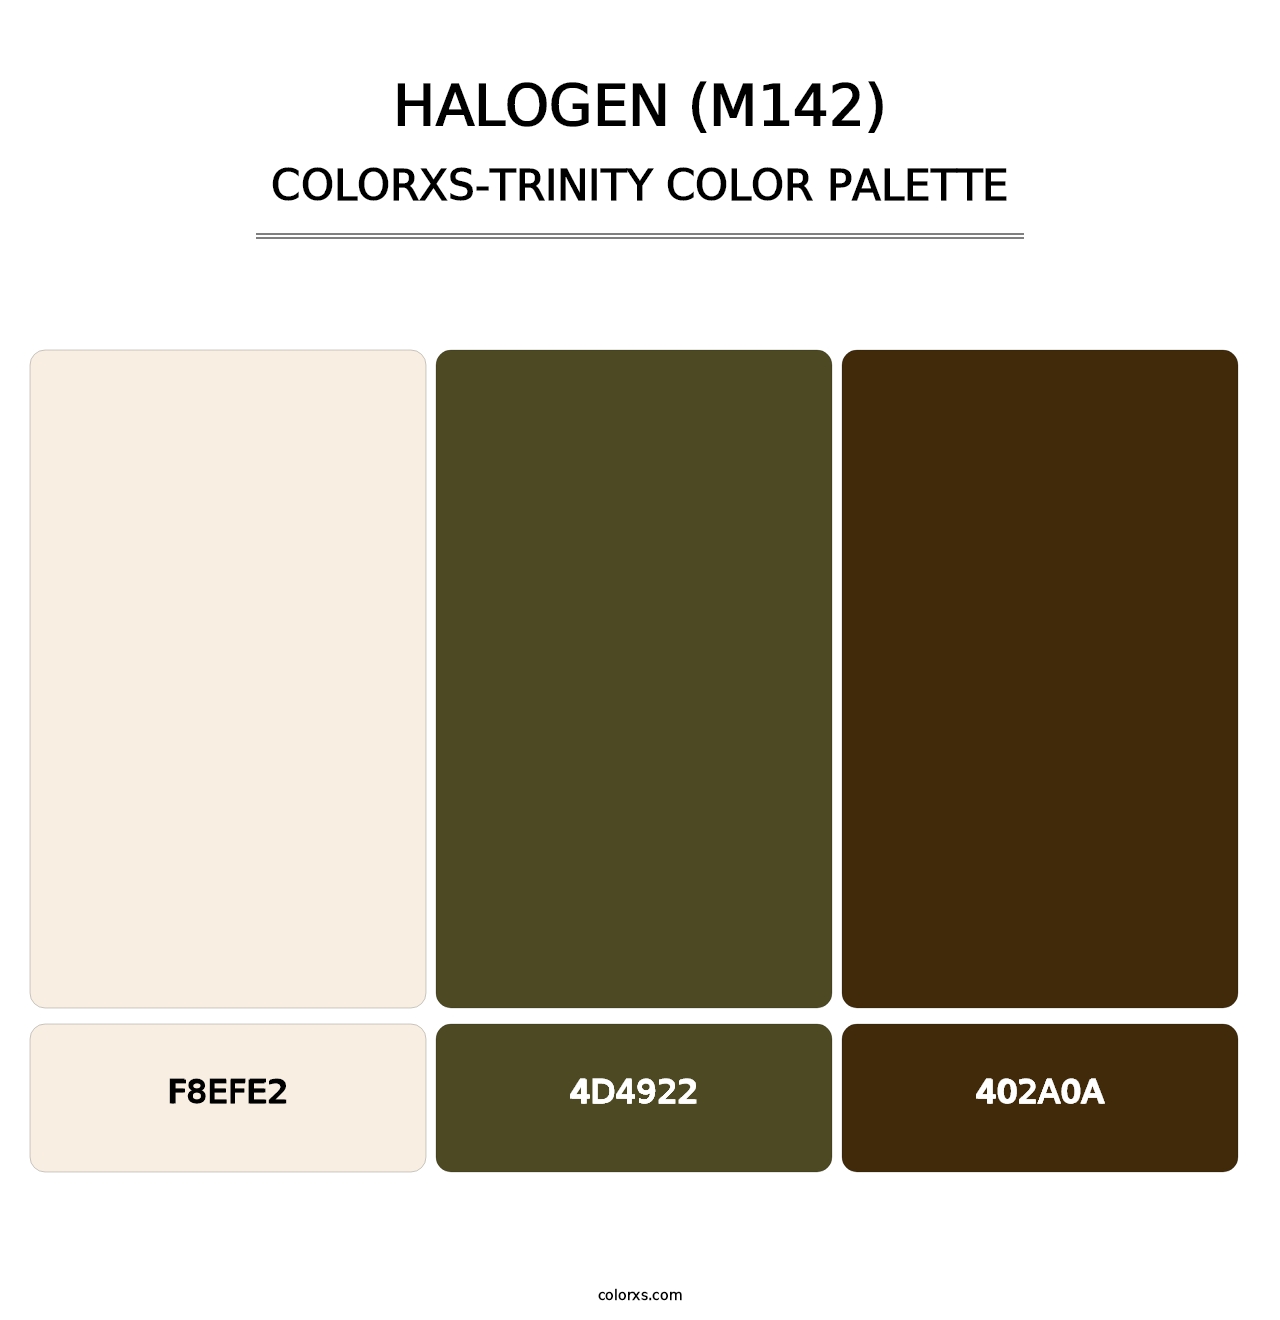 Halogen (M142) - Colorxs Trinity Palette